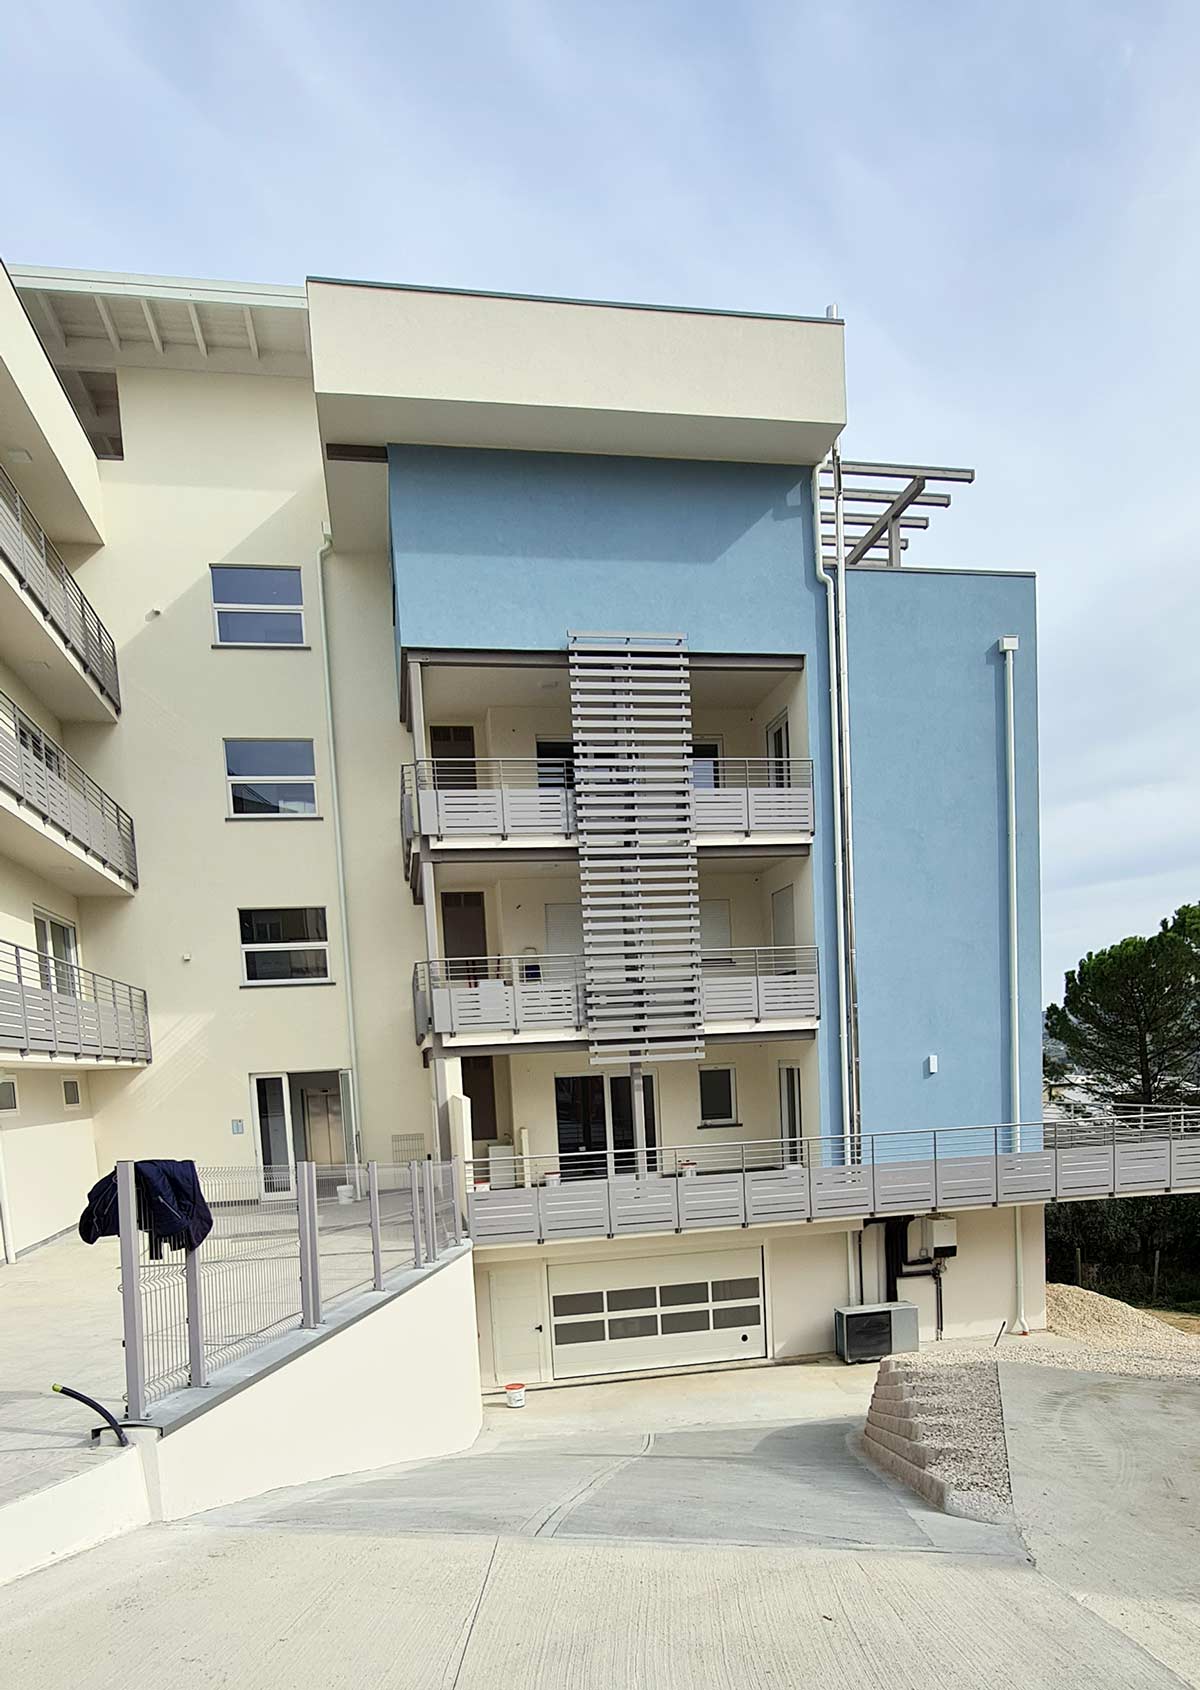 Edificio Residenziale Multipiano in Legno "Residence Colleverde" - Legnofab